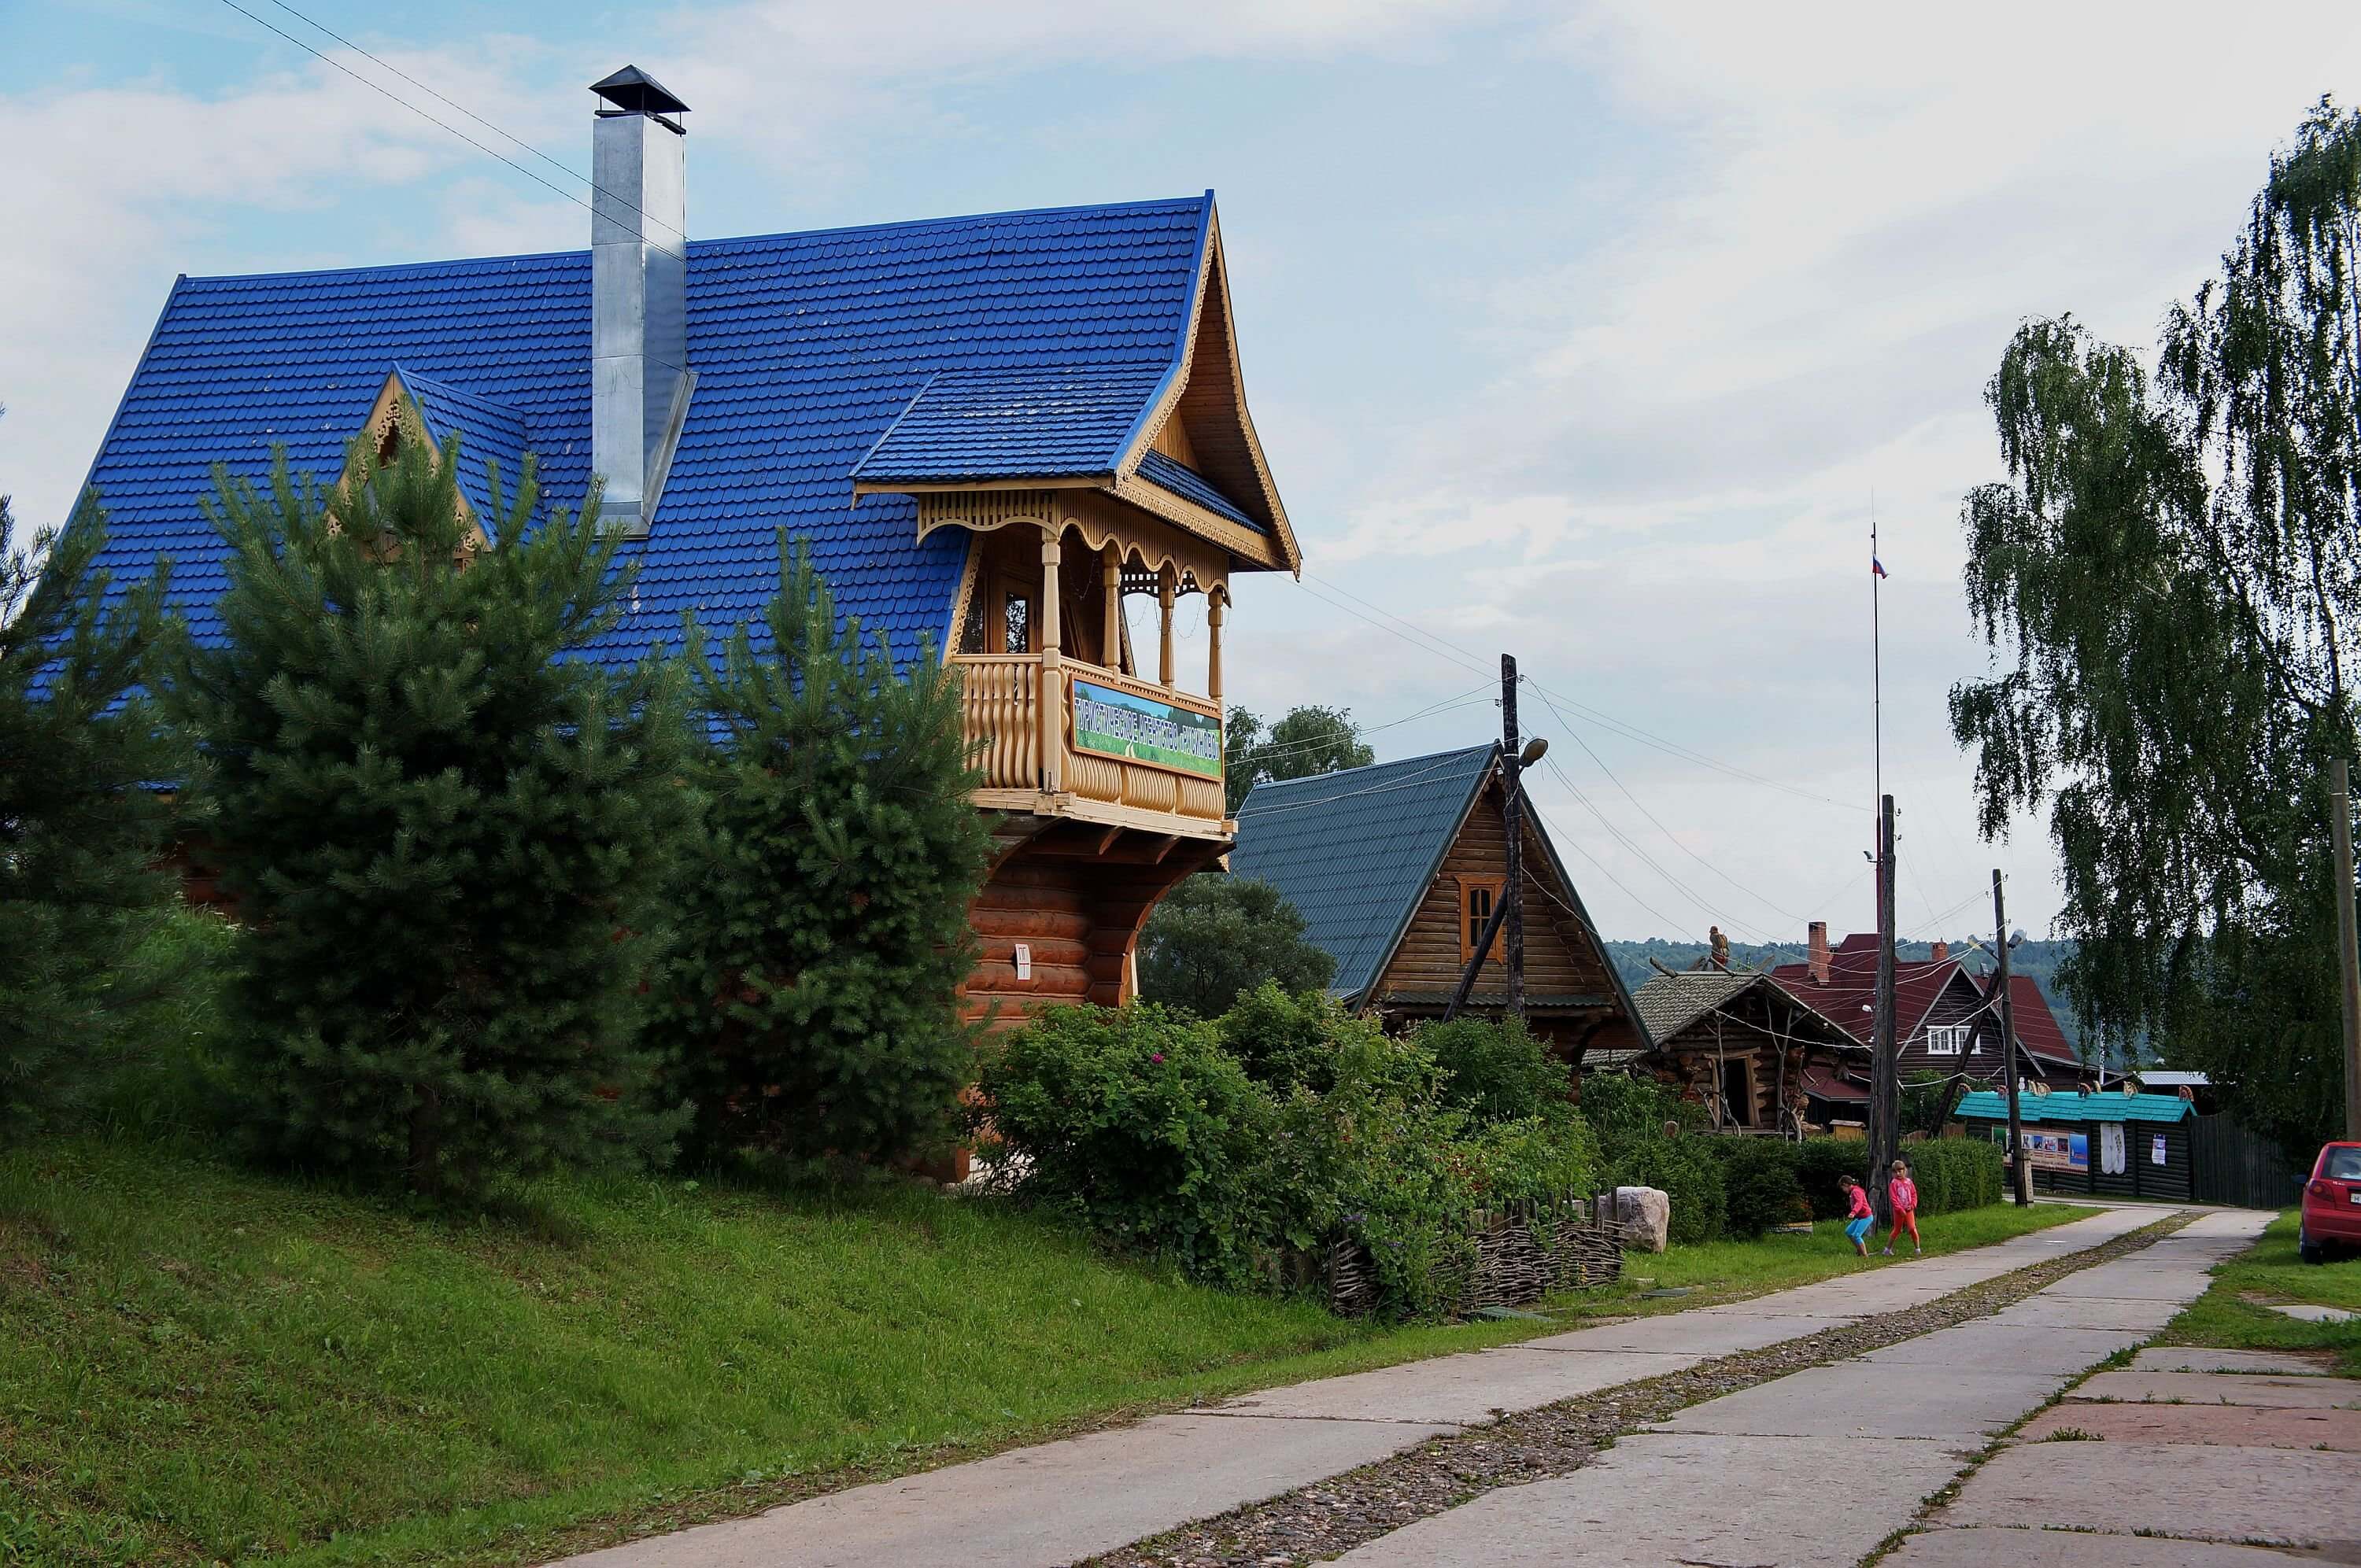 Настоящая, русская деревня. Гостевые дома, дорожка, вечер.